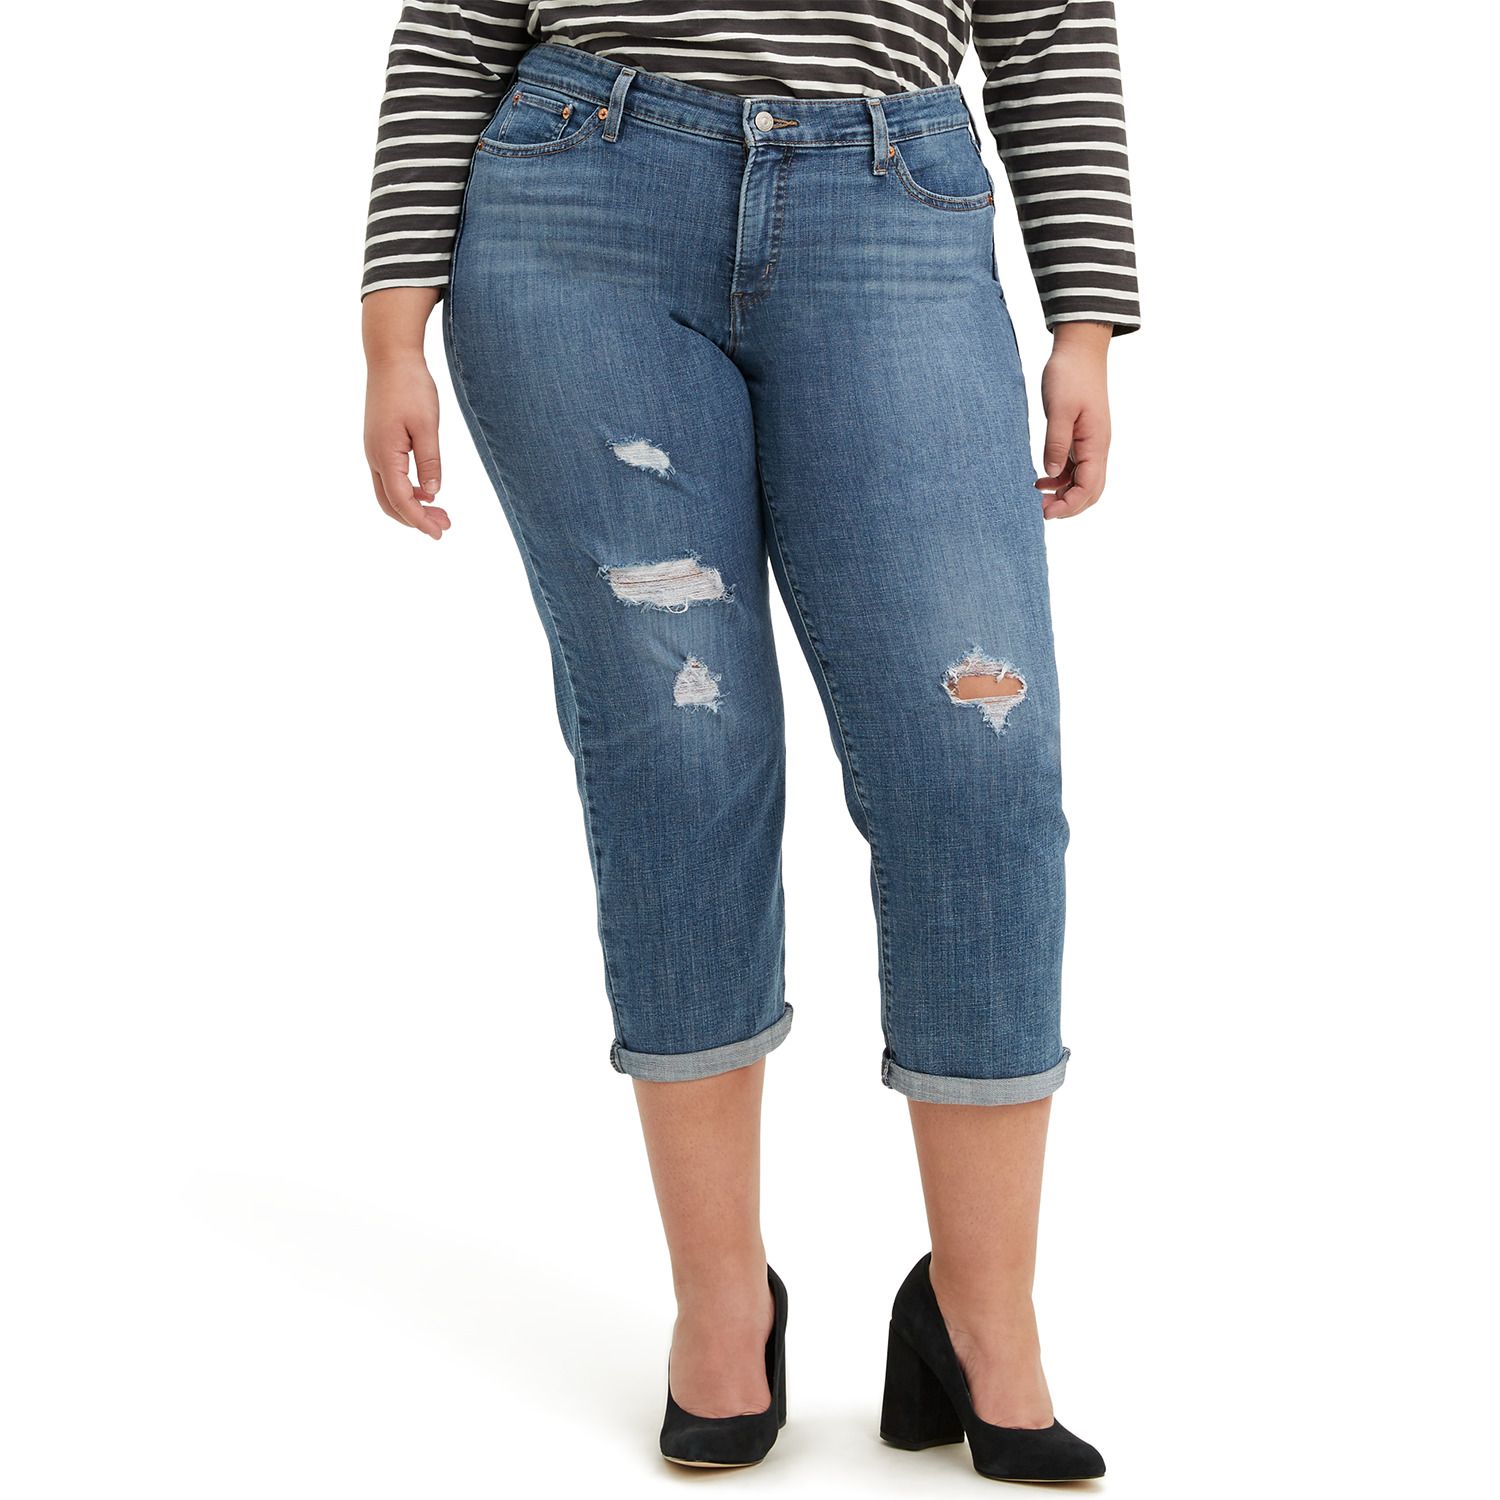 Image for Levi's Plus Size Boyfriend Jeans at Kohl's.